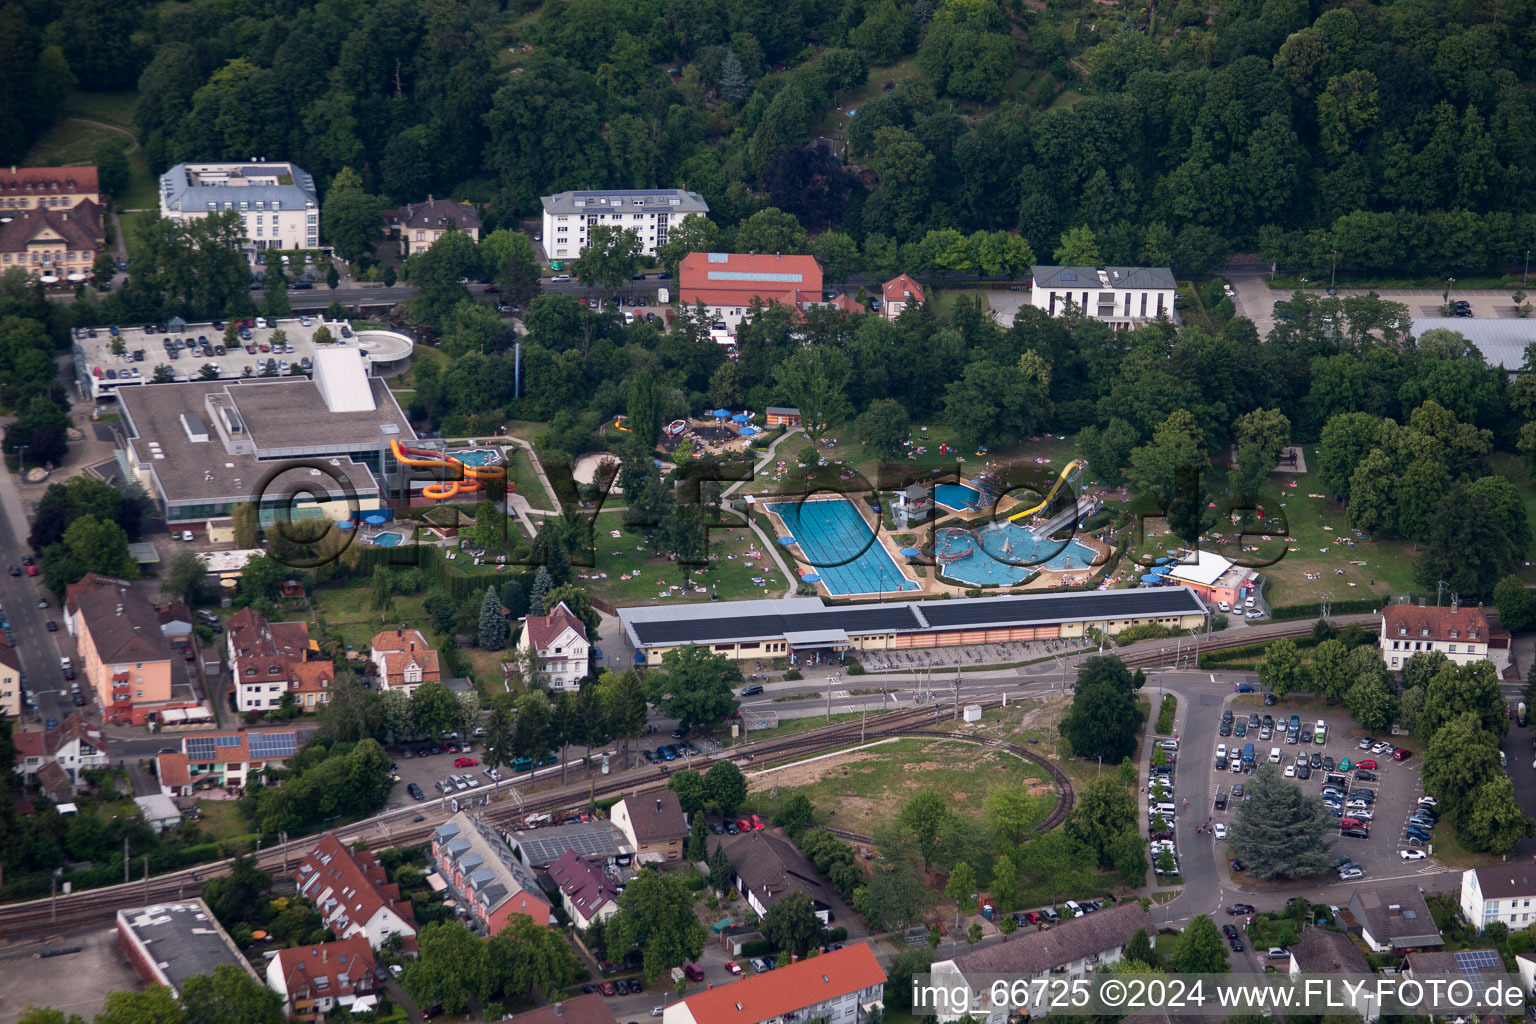 Luftbild von Badegäste auf den Liegewiesen am Schwimmbecken des Freibades Albgau Freibad in Ettlingen im Bundesland Baden-Württemberg, Deutschland